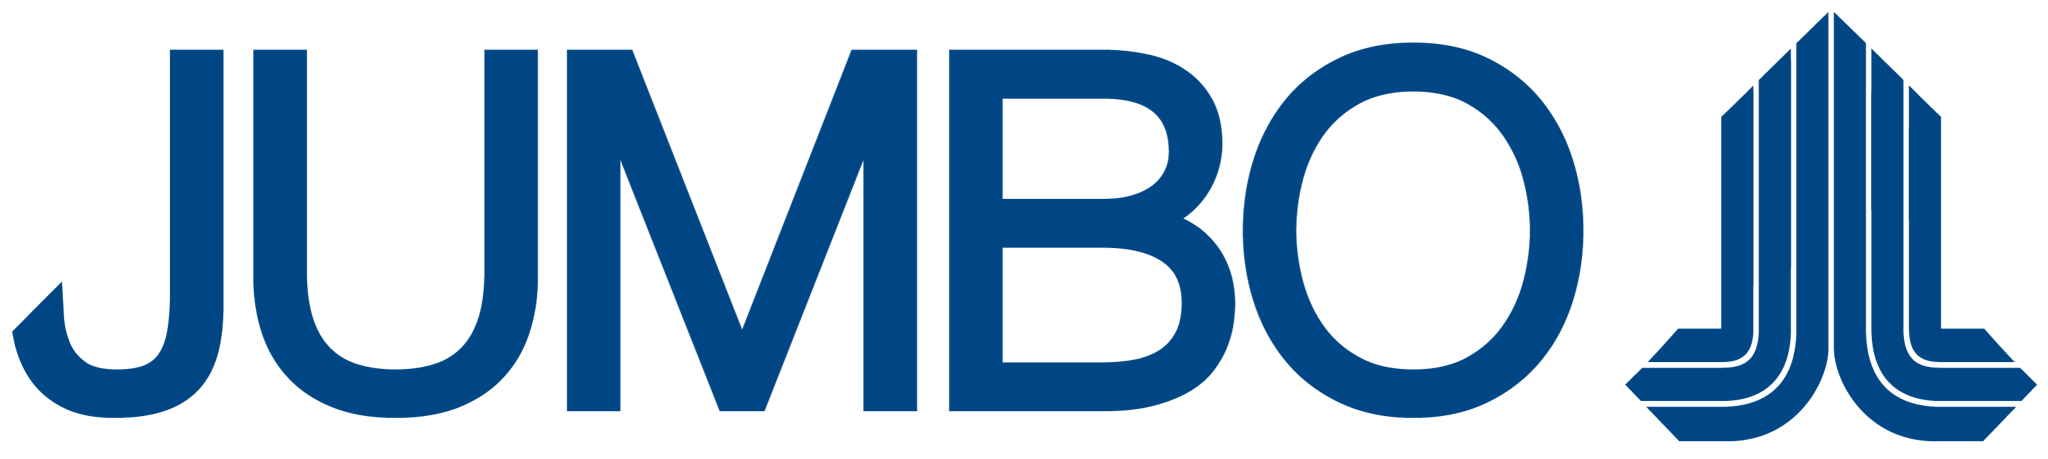 Jumbo Electronics Brand Logo